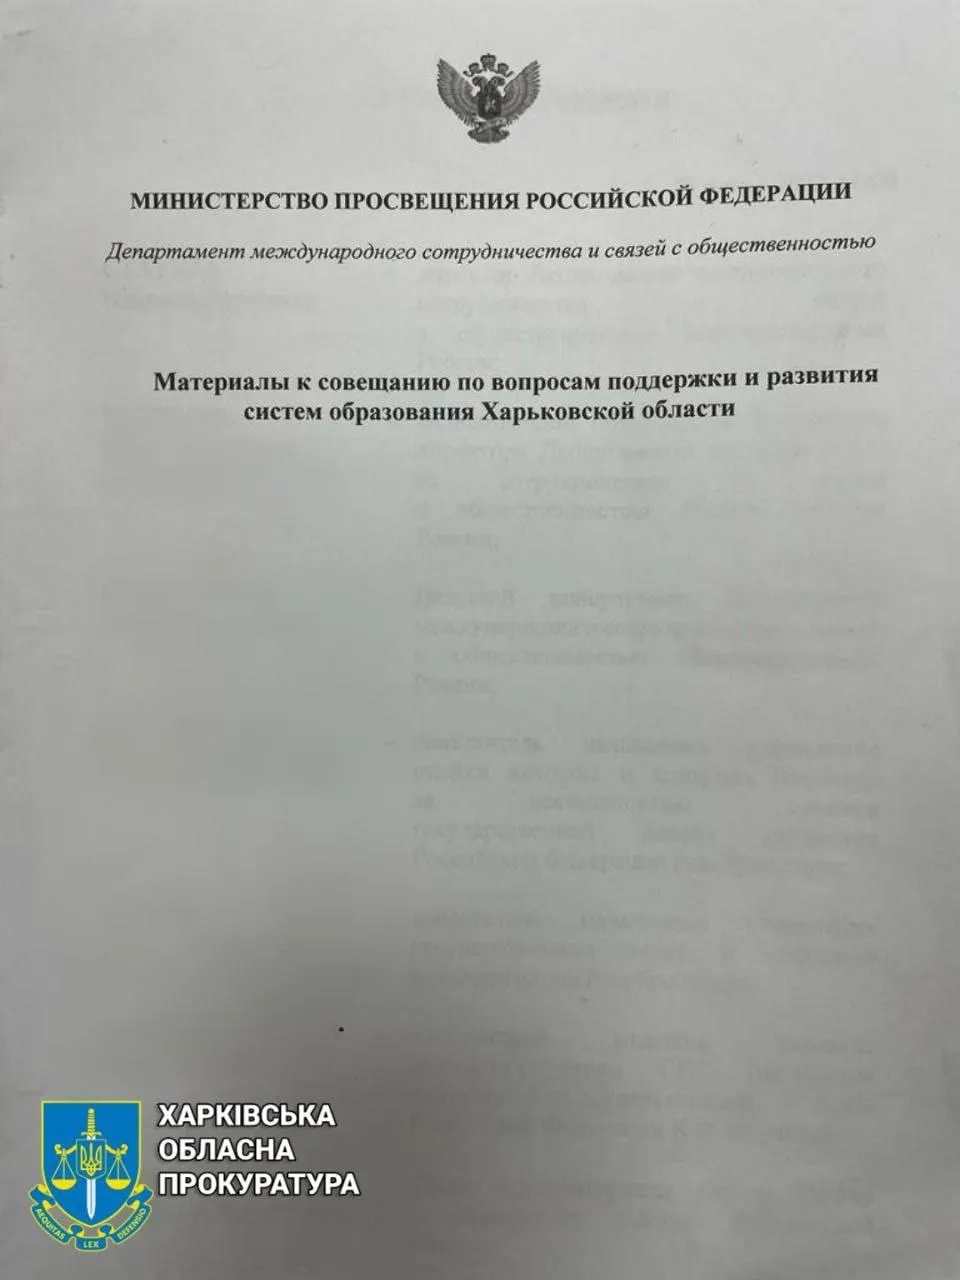 Доказательства русификации кафиров в Харьковской области